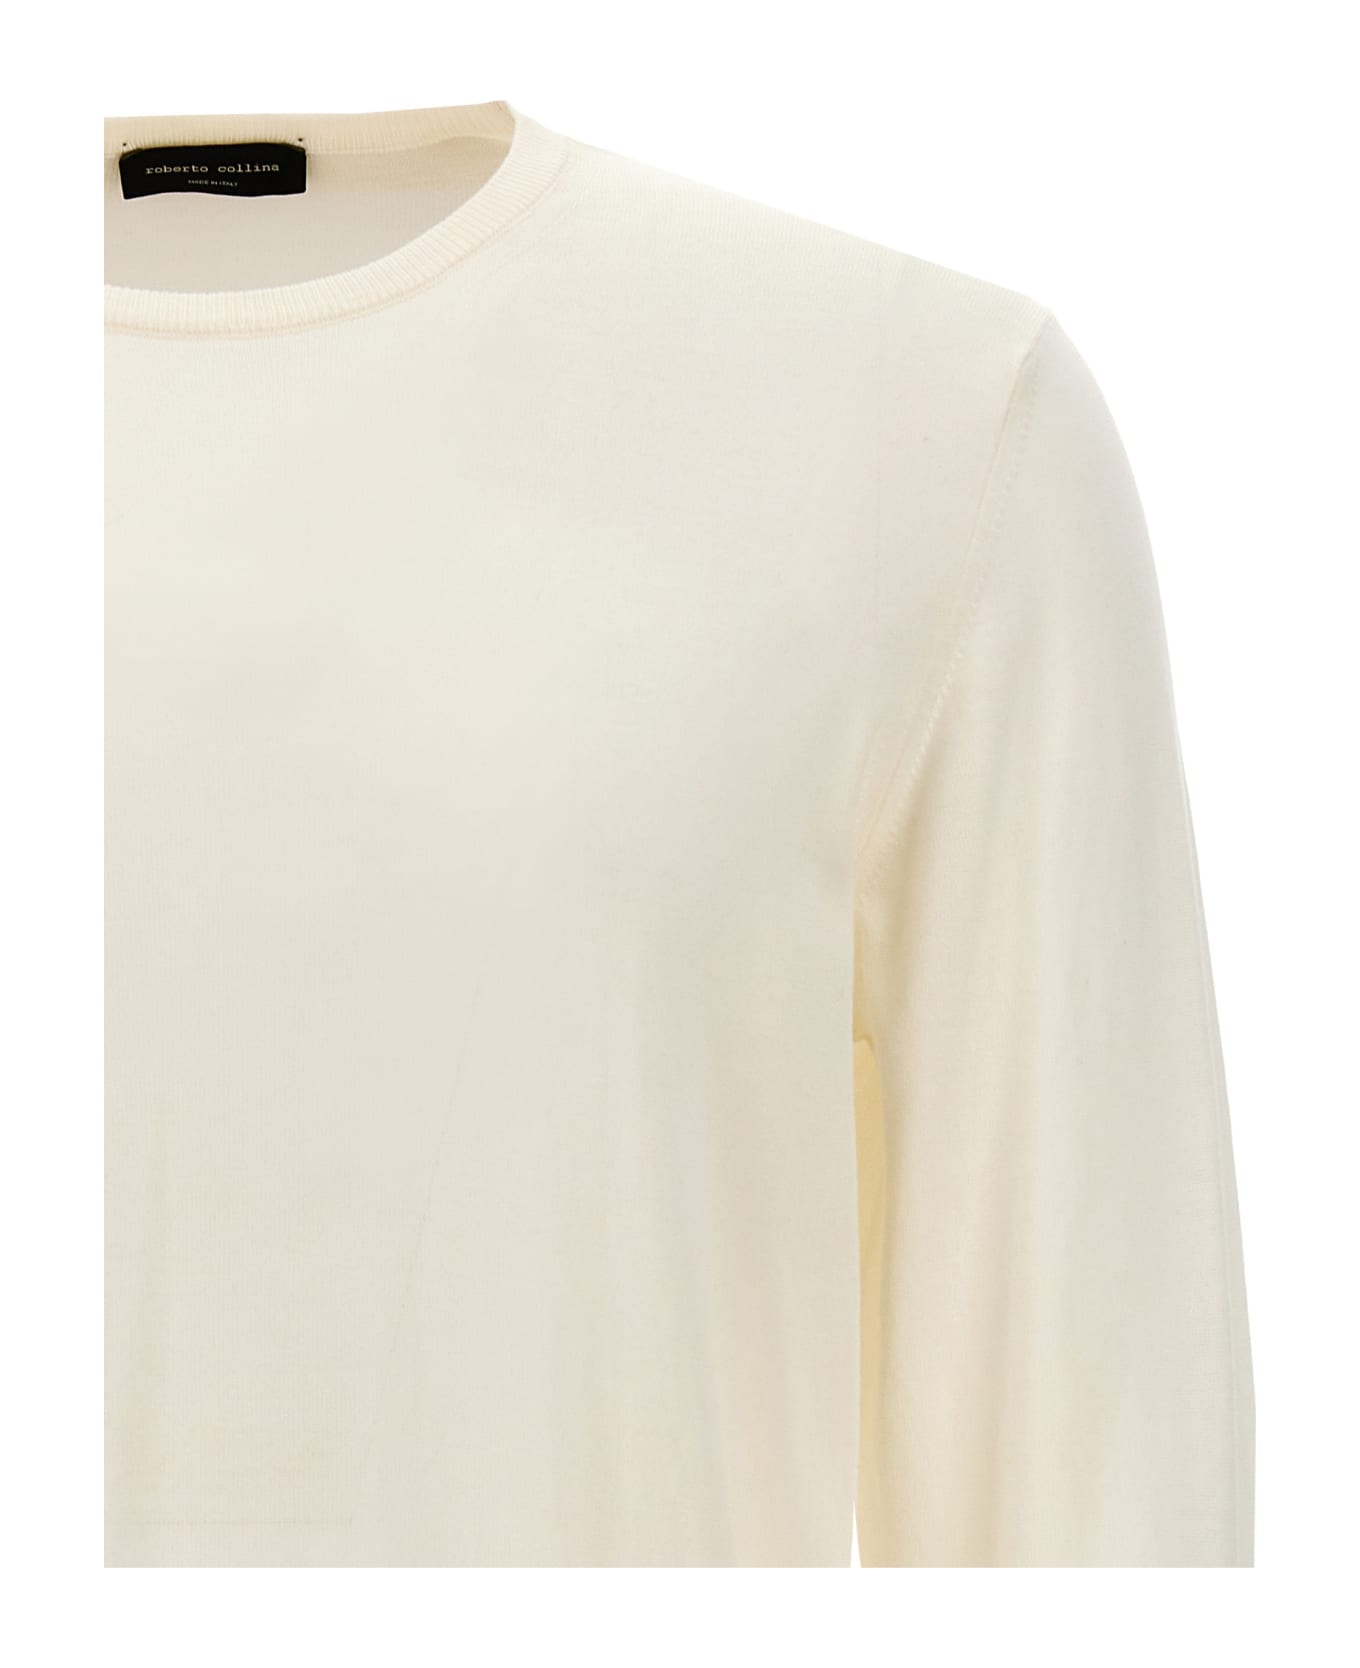 Roberto Collina Cotton Sweater - White